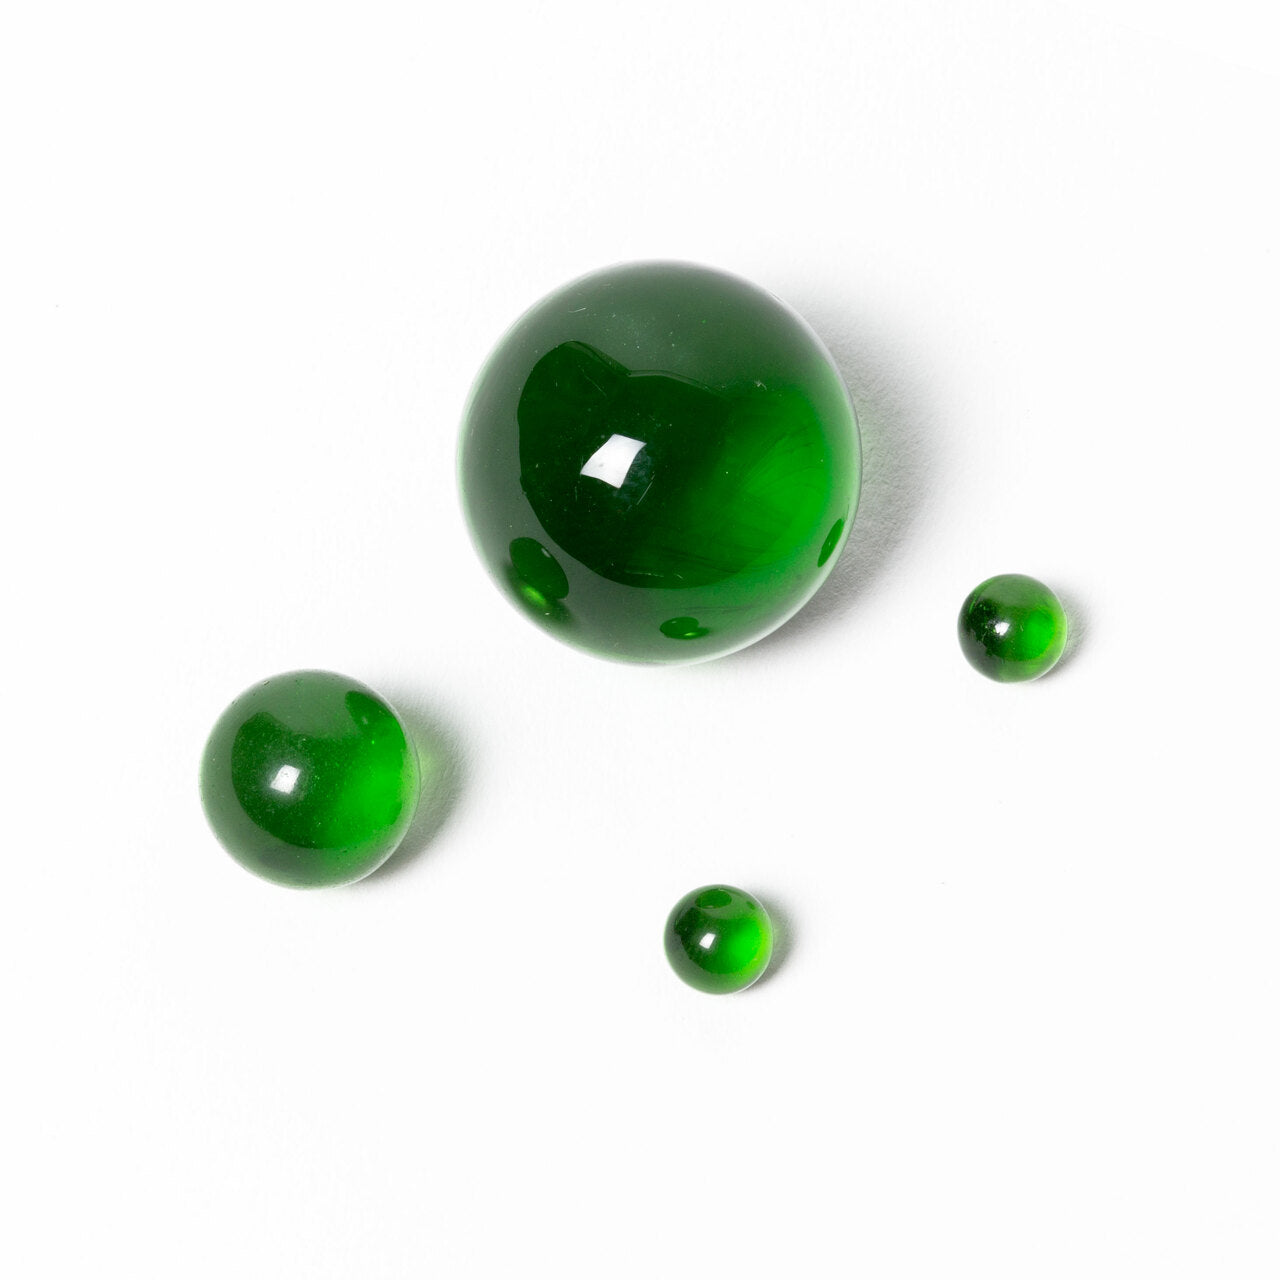 aleaf terp pearls green us colors